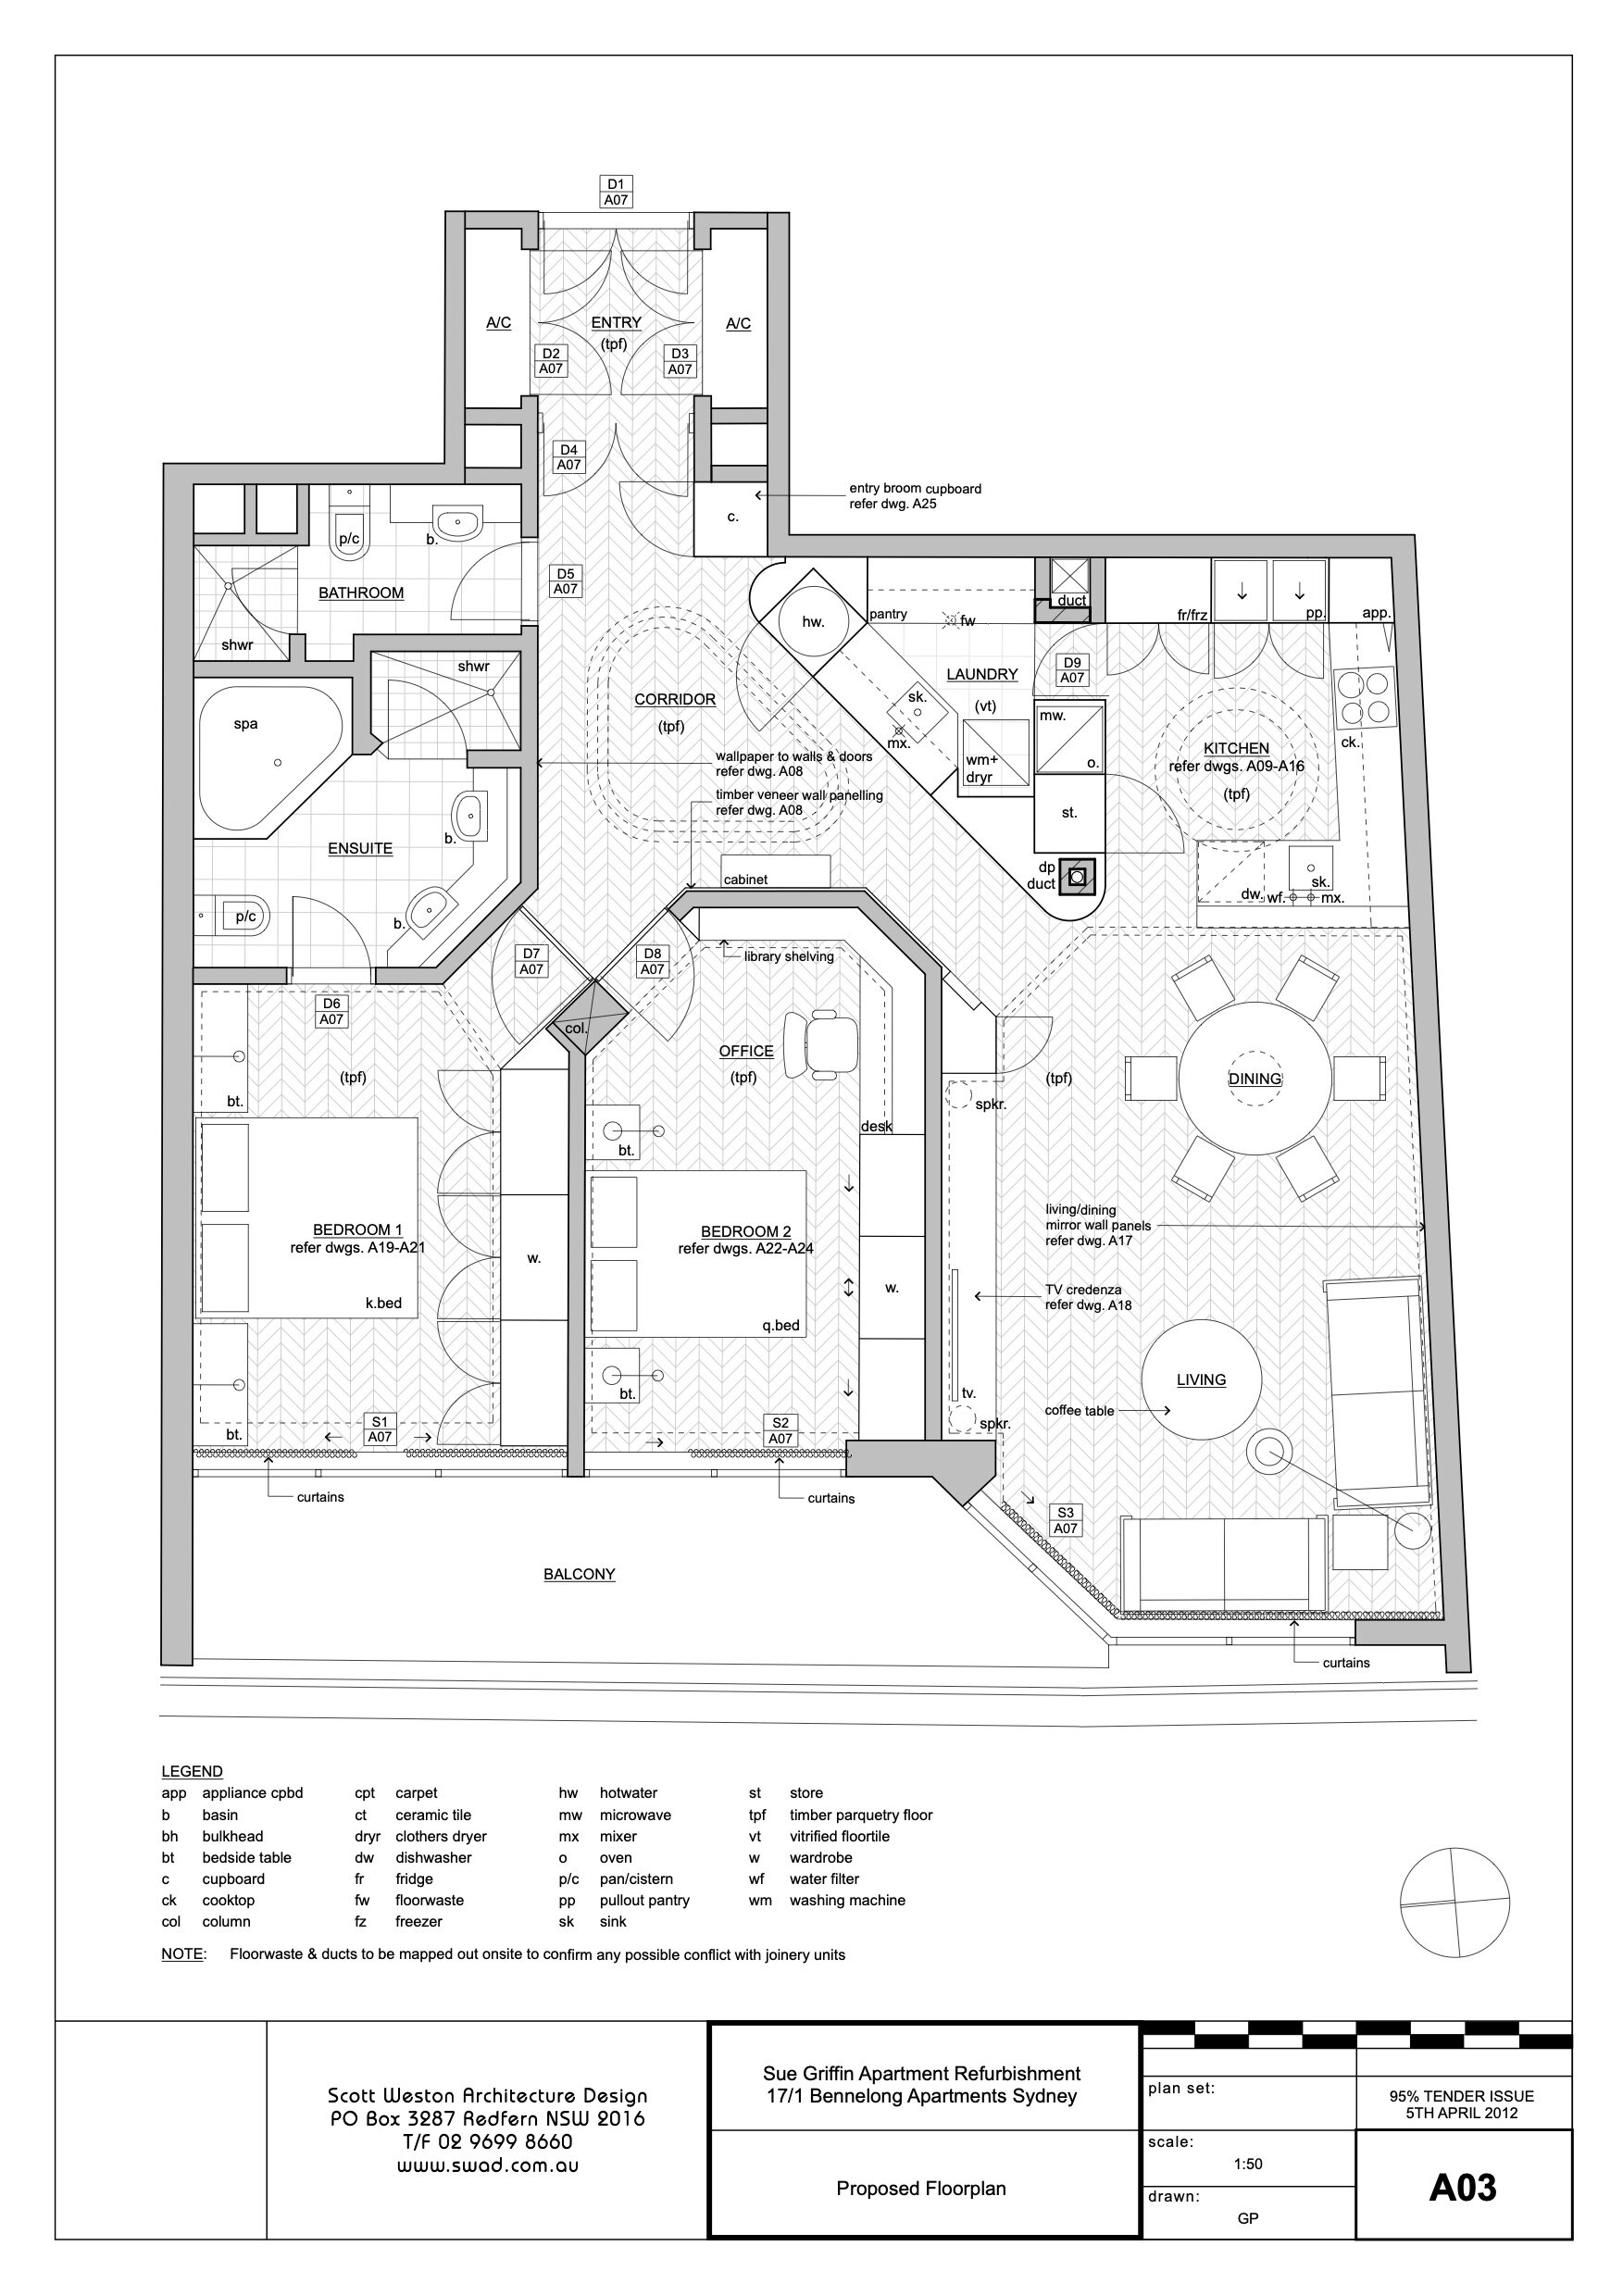 A03 Proposed Floorplan.jpg